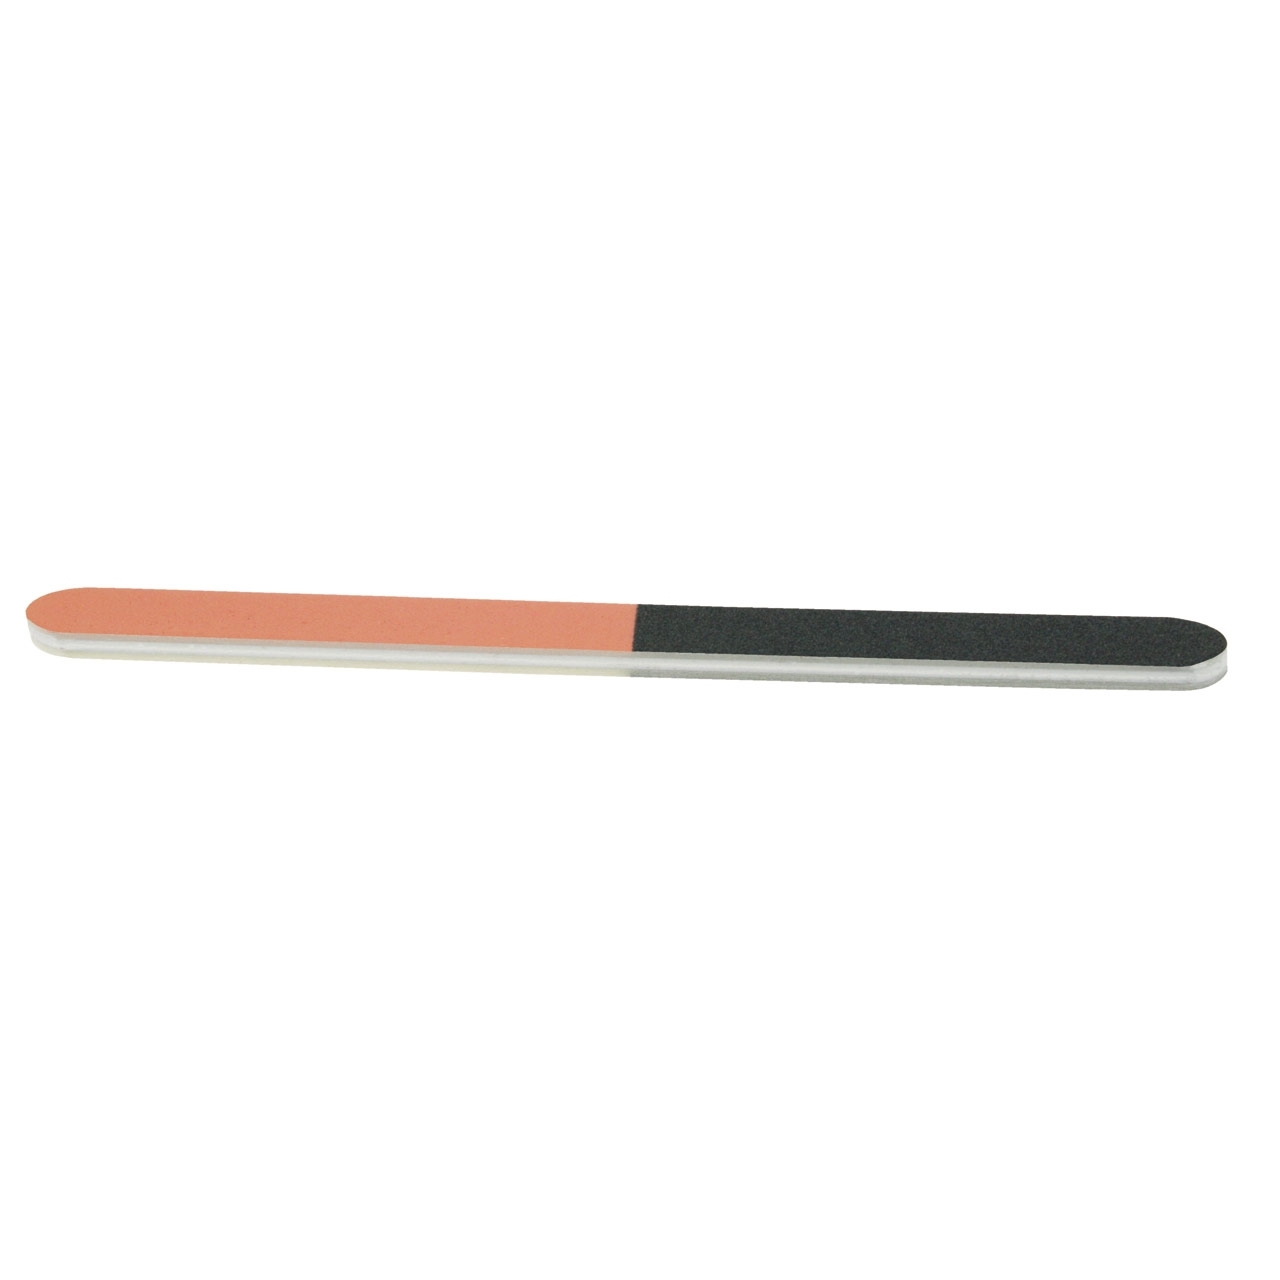 BAEHR Polierfeile 4fach schwarz/pink/weiß/grau Körnung 2400/3600/4800/12000